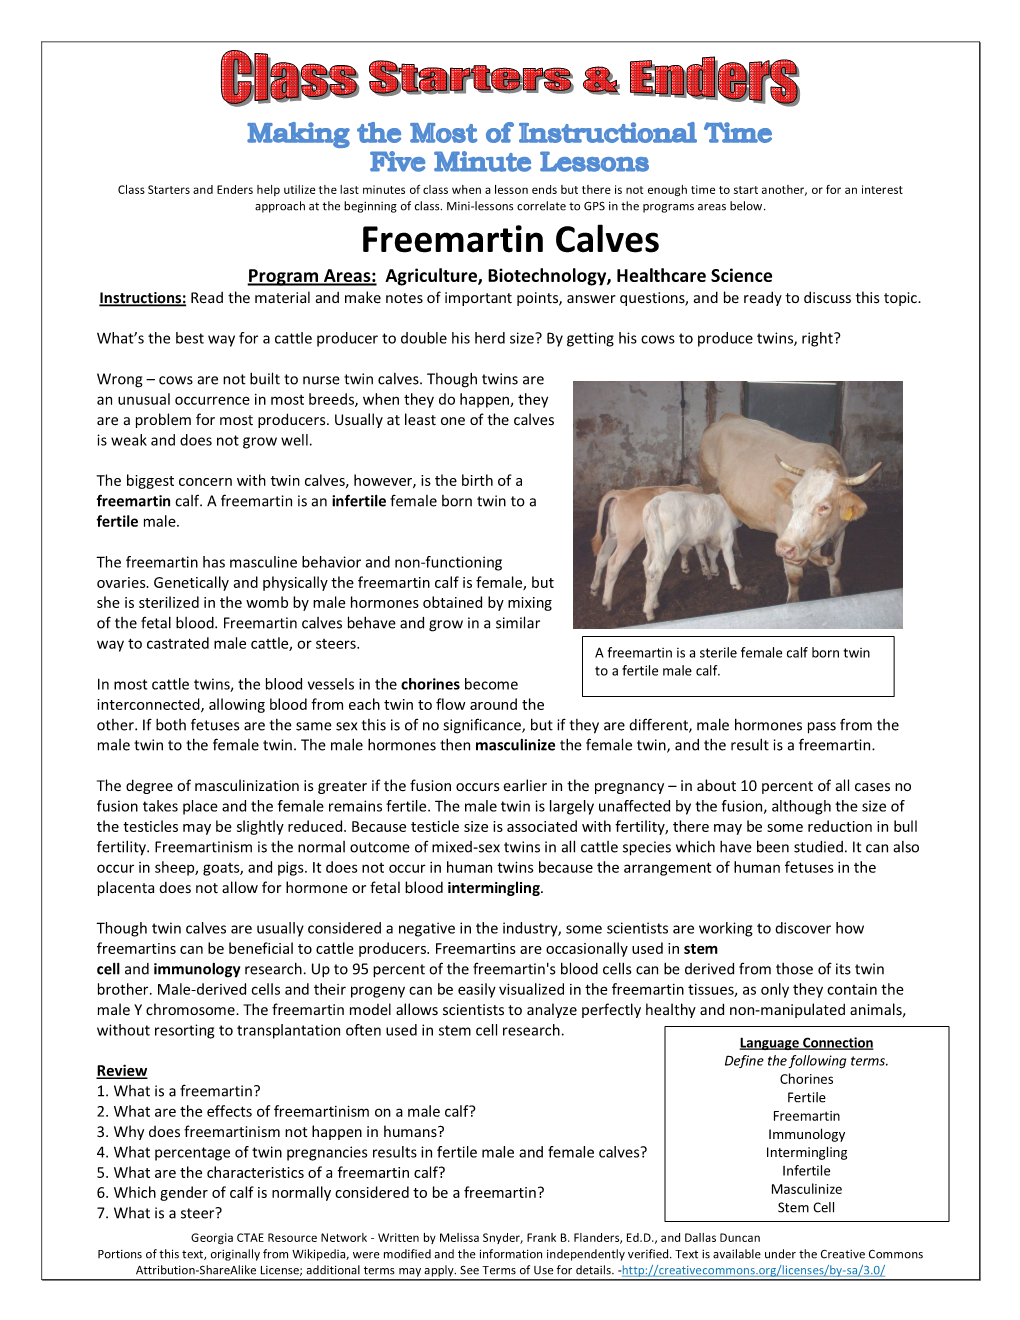 Freemartin Calves